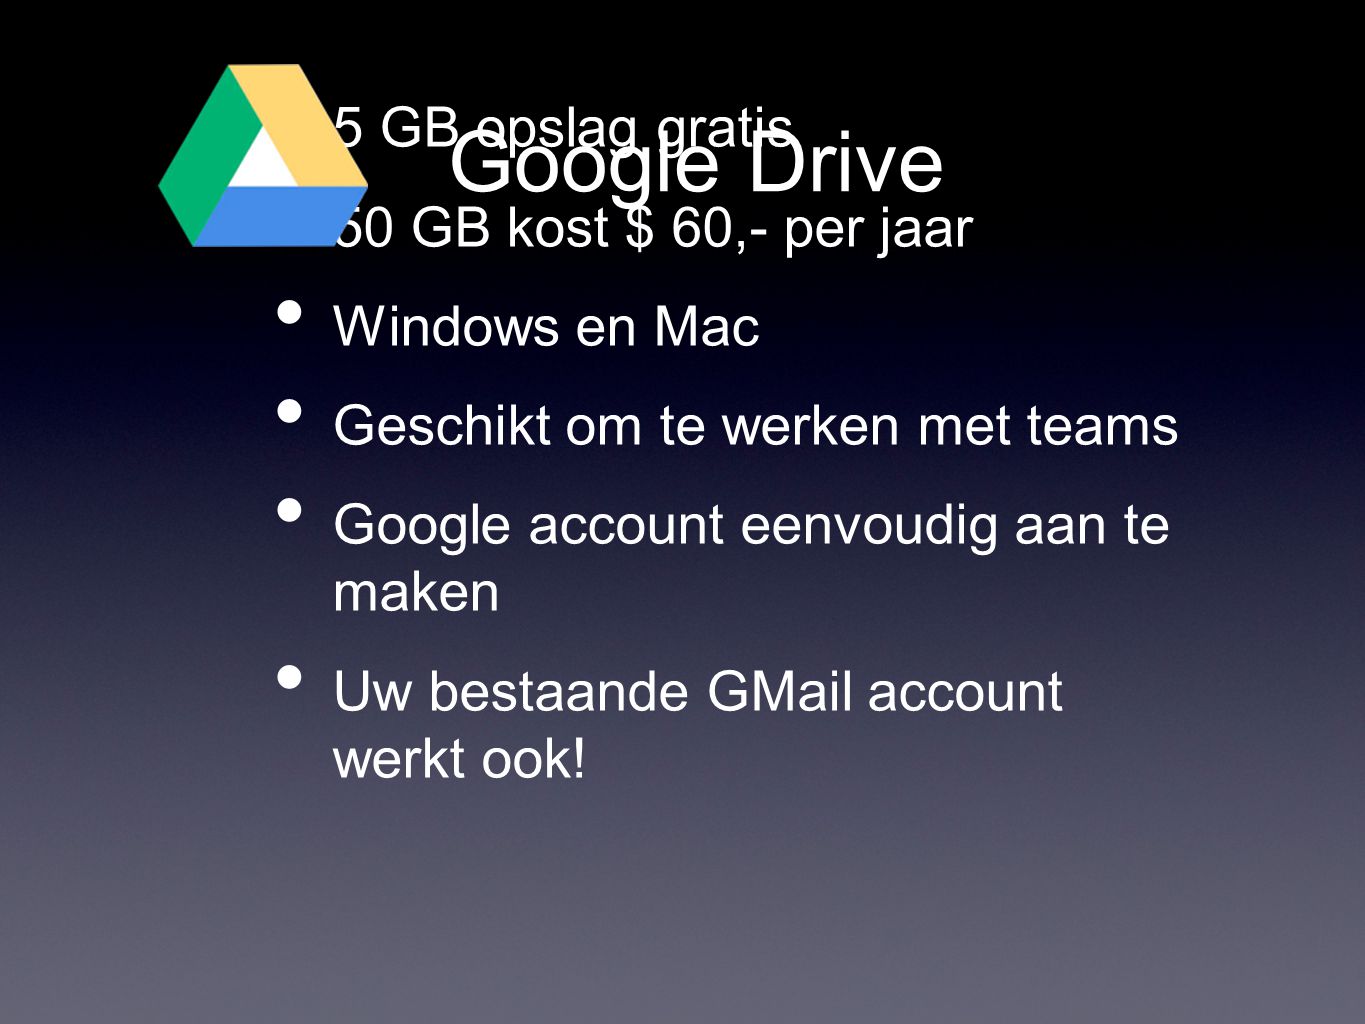 Google Drive • 5 GB opslag gratis • 50 GB kost $ 60,- per jaar • Windows en Mac • Geschikt om te werken met teams • Google account eenvoudig aan te maken • Uw bestaande GMail account werkt ook!